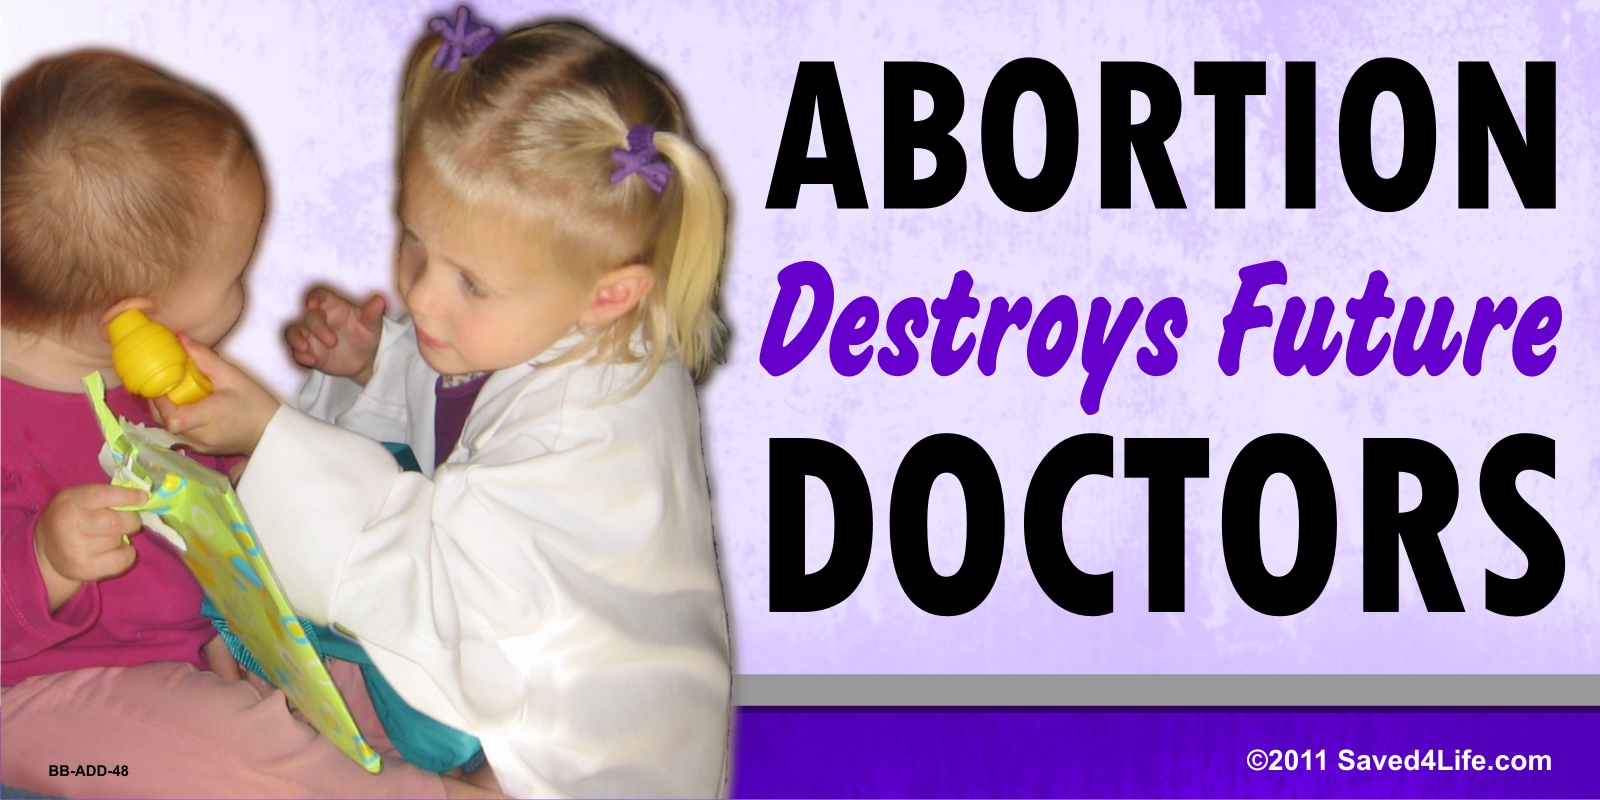 Abortion Destroys Future Doctors